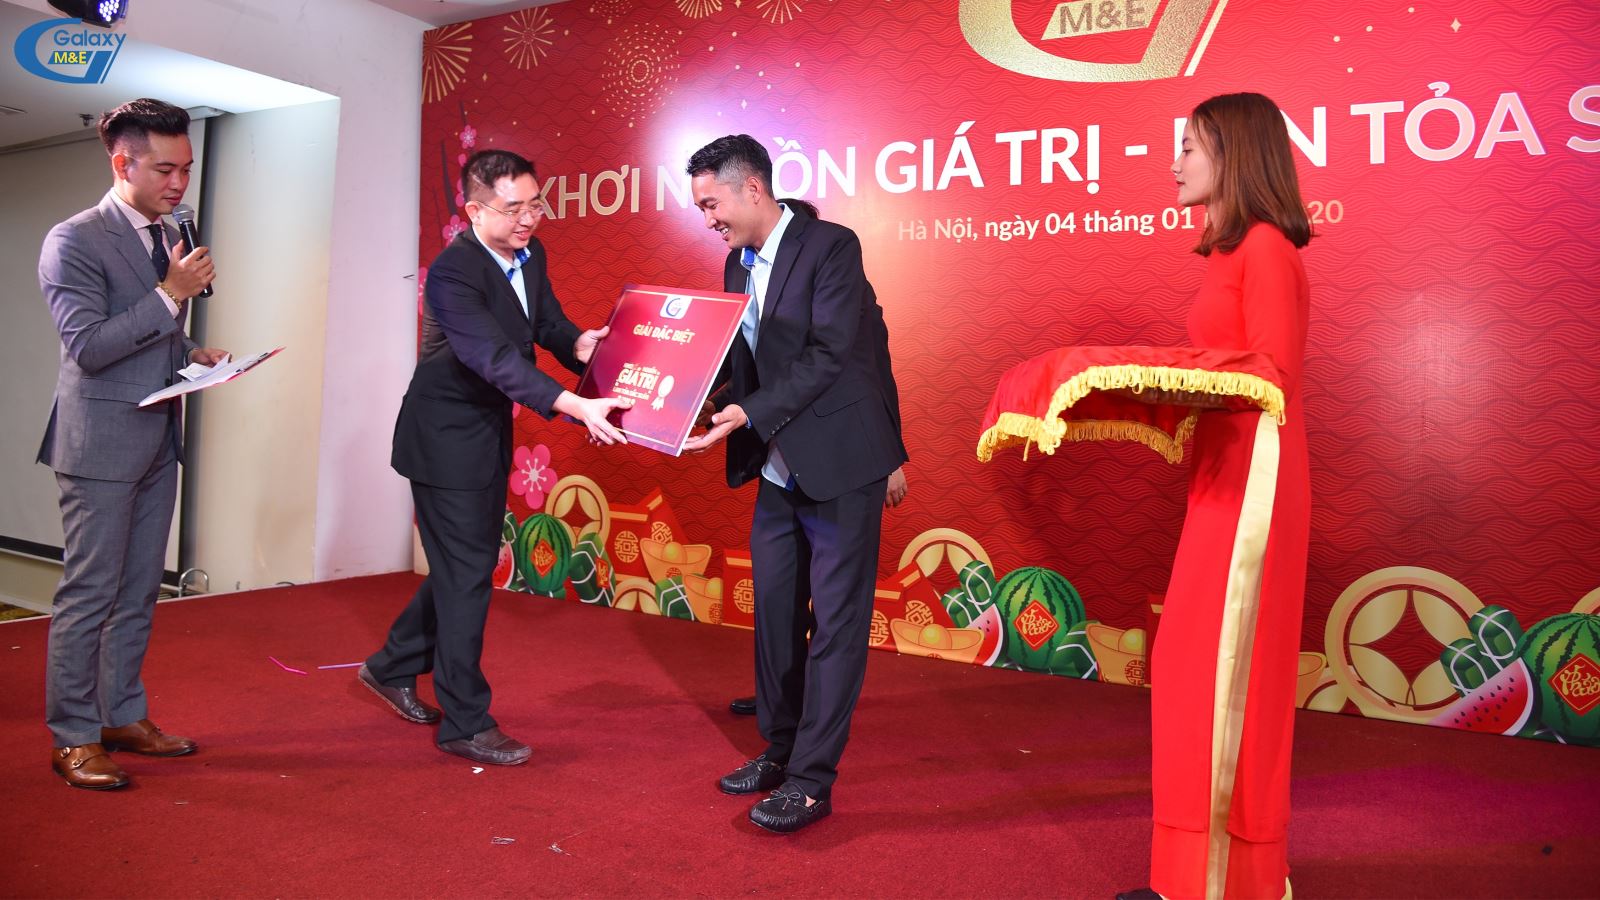 Đích thân ông Đỗ Đăng Bình - Giám đốc Cơ Điện Galaxy trao tặng giải Nhất chương trình “Những niềm vui bất ngờ” cho người may mắn.